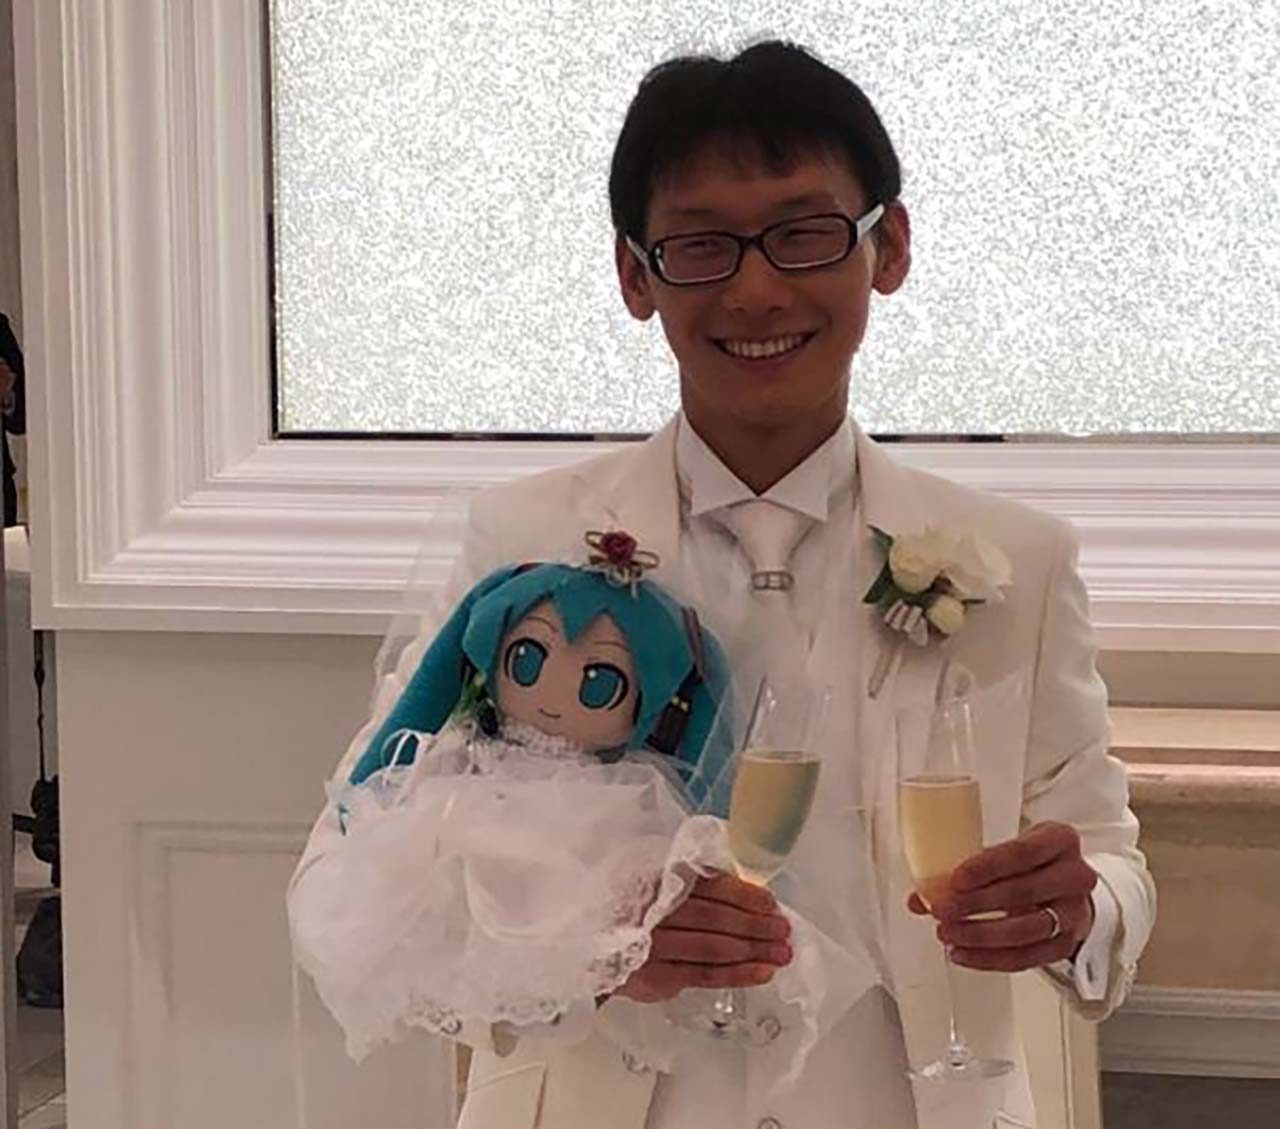 가상 아이돌 캐릭터와 결혼한 35세 일본 남성